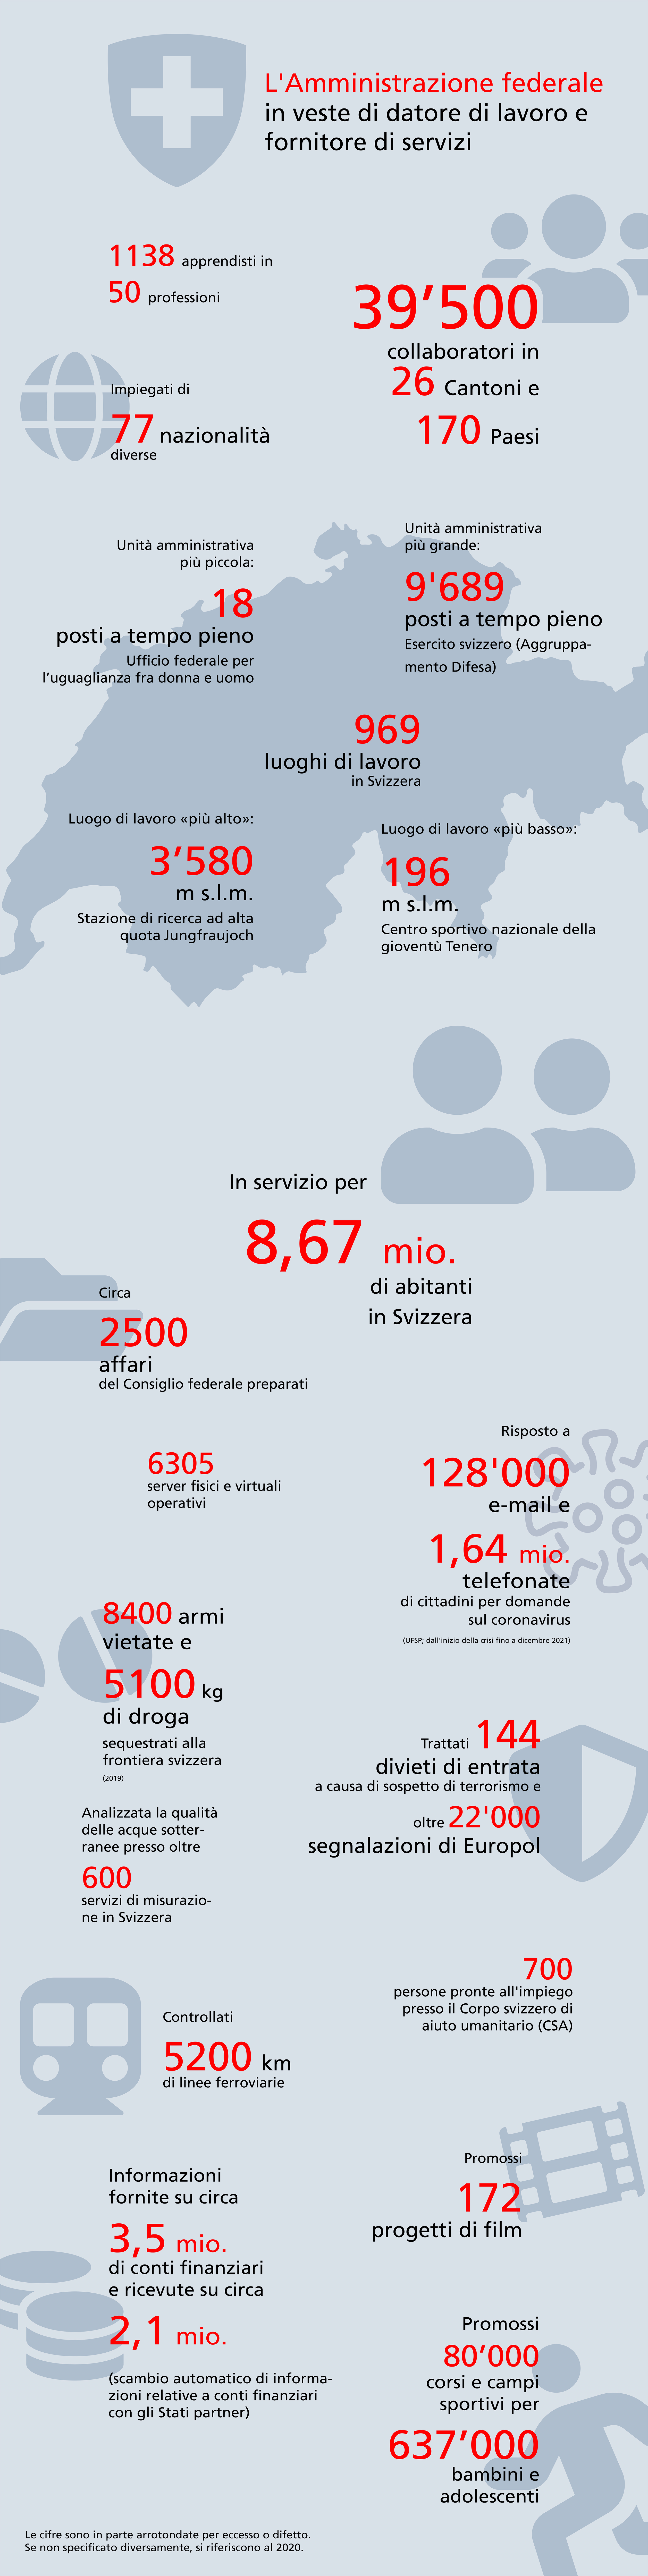 Infografica con cifre eloquenti sull'Amministrazione federale in veste di datore di lavoro e fornitore di servizi.